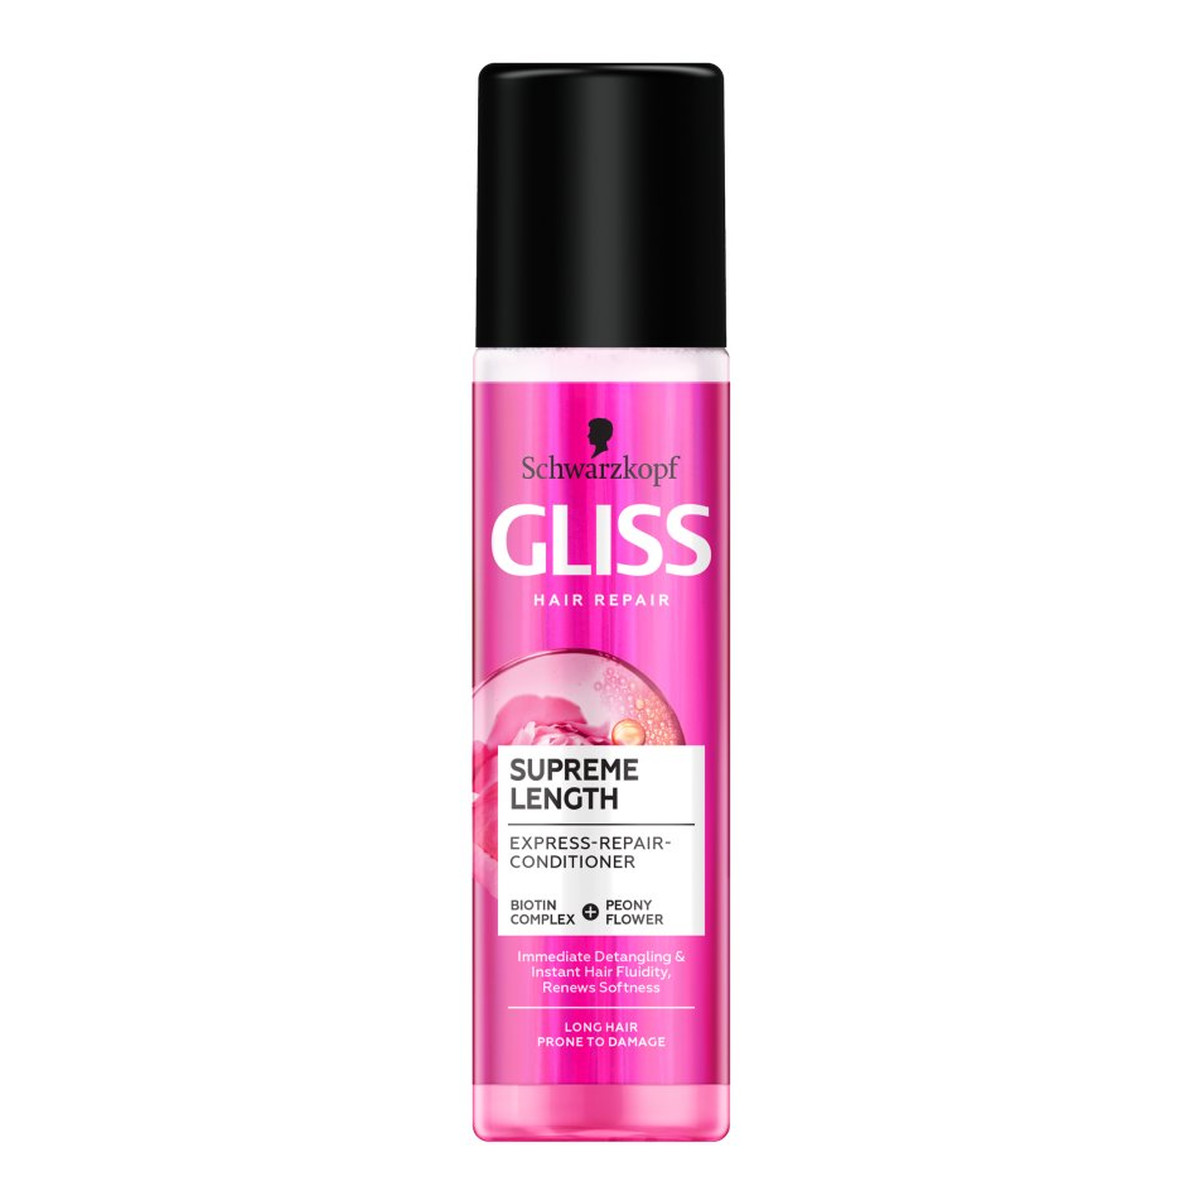 Gliss Supreme Length Odżywka-spray do włosów regeneracyjna 200ml